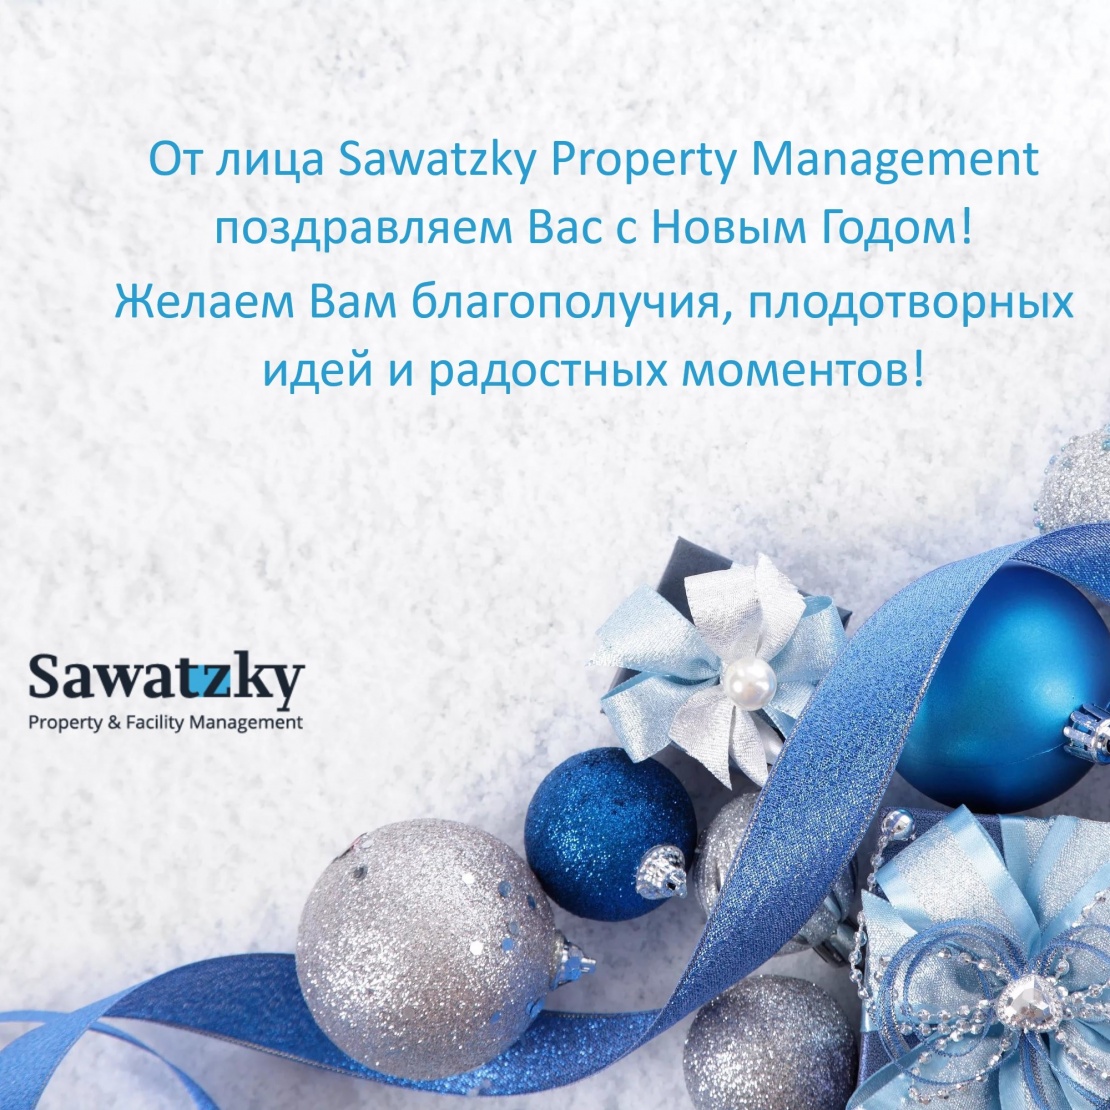 Sawatzky Property Management поздравляет Вас с Новым 2020 Годом!